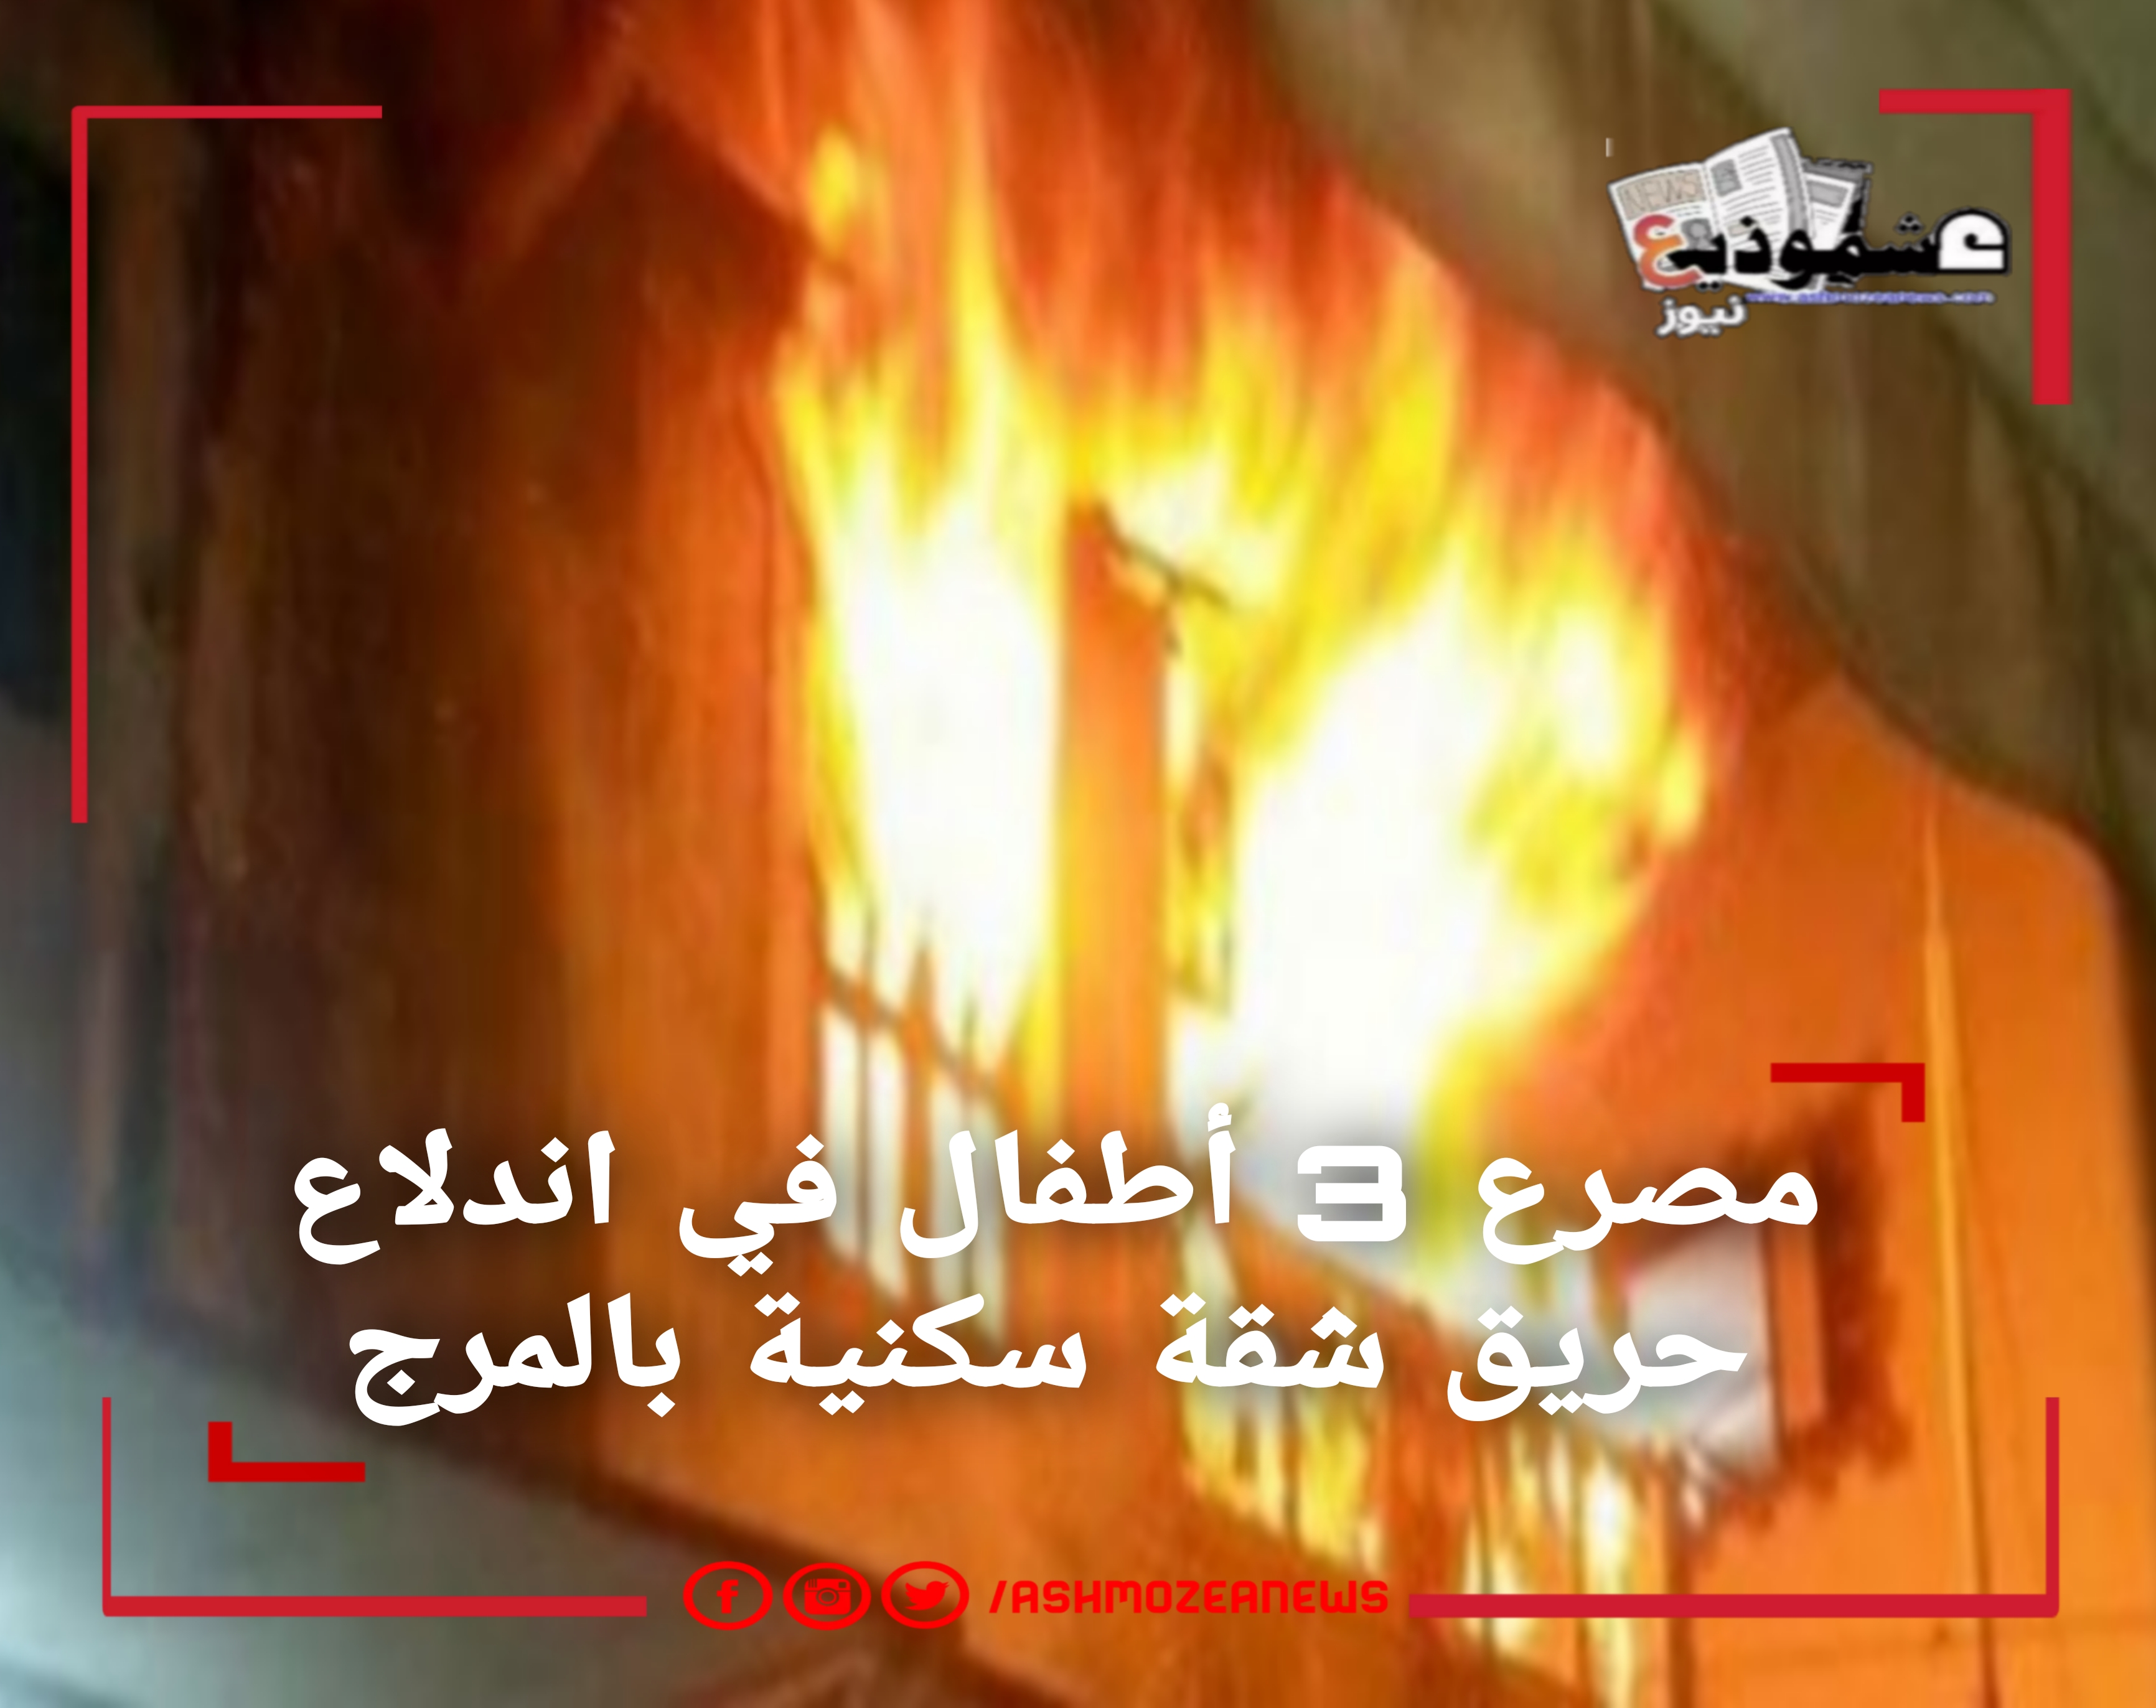  مصرع 3 أطفال في اندلاع حريق شقة سكنية بالمرج